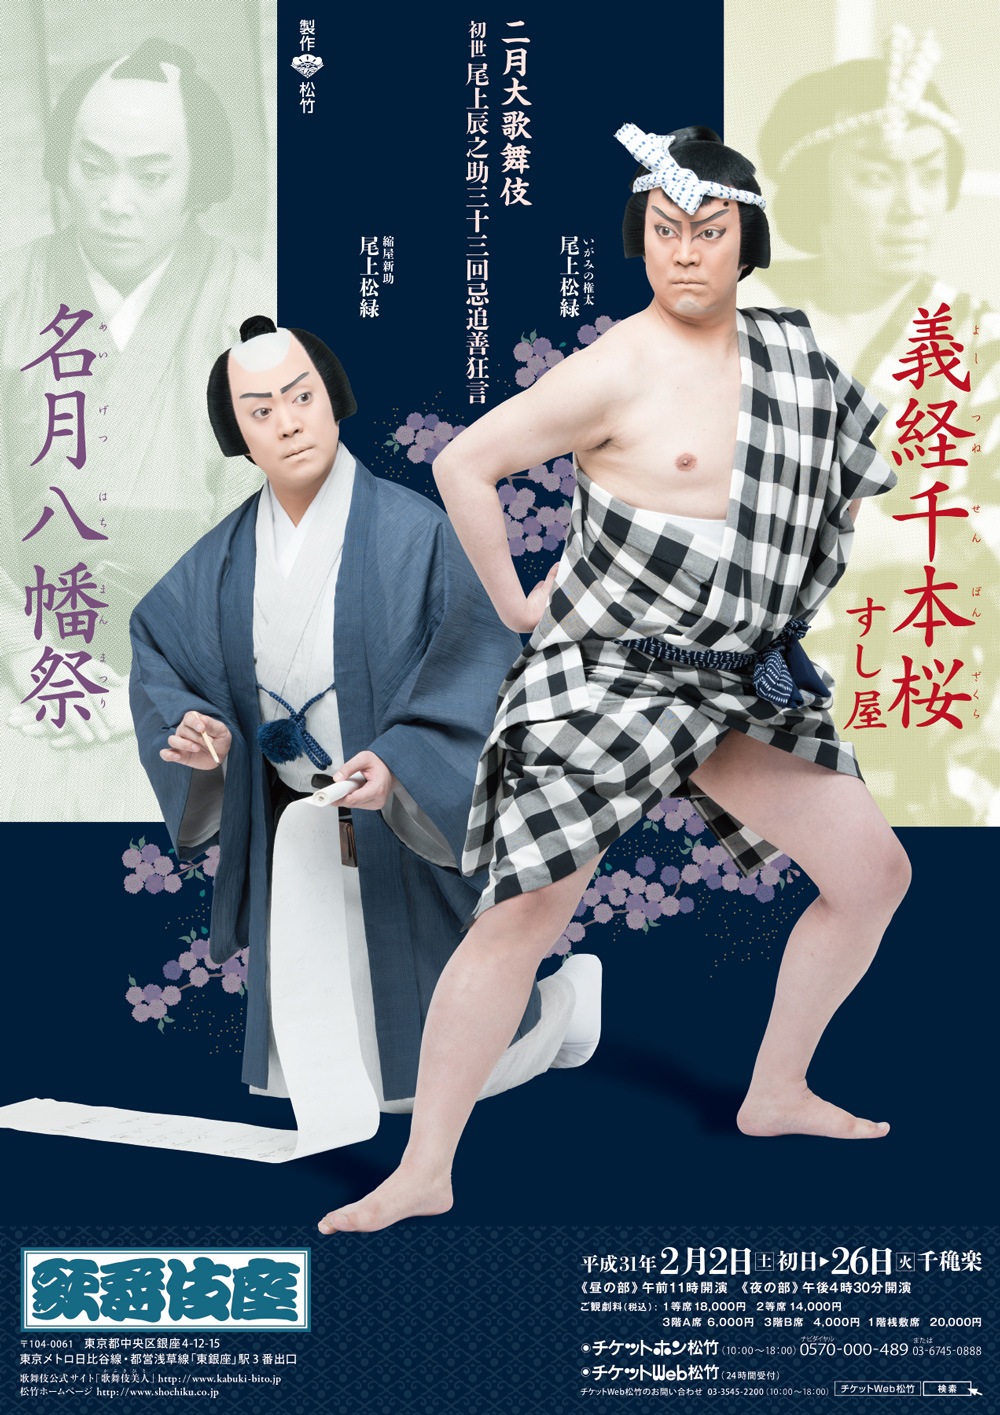 歌舞伎座「二月大歌舞伎」特別ポスターが完成